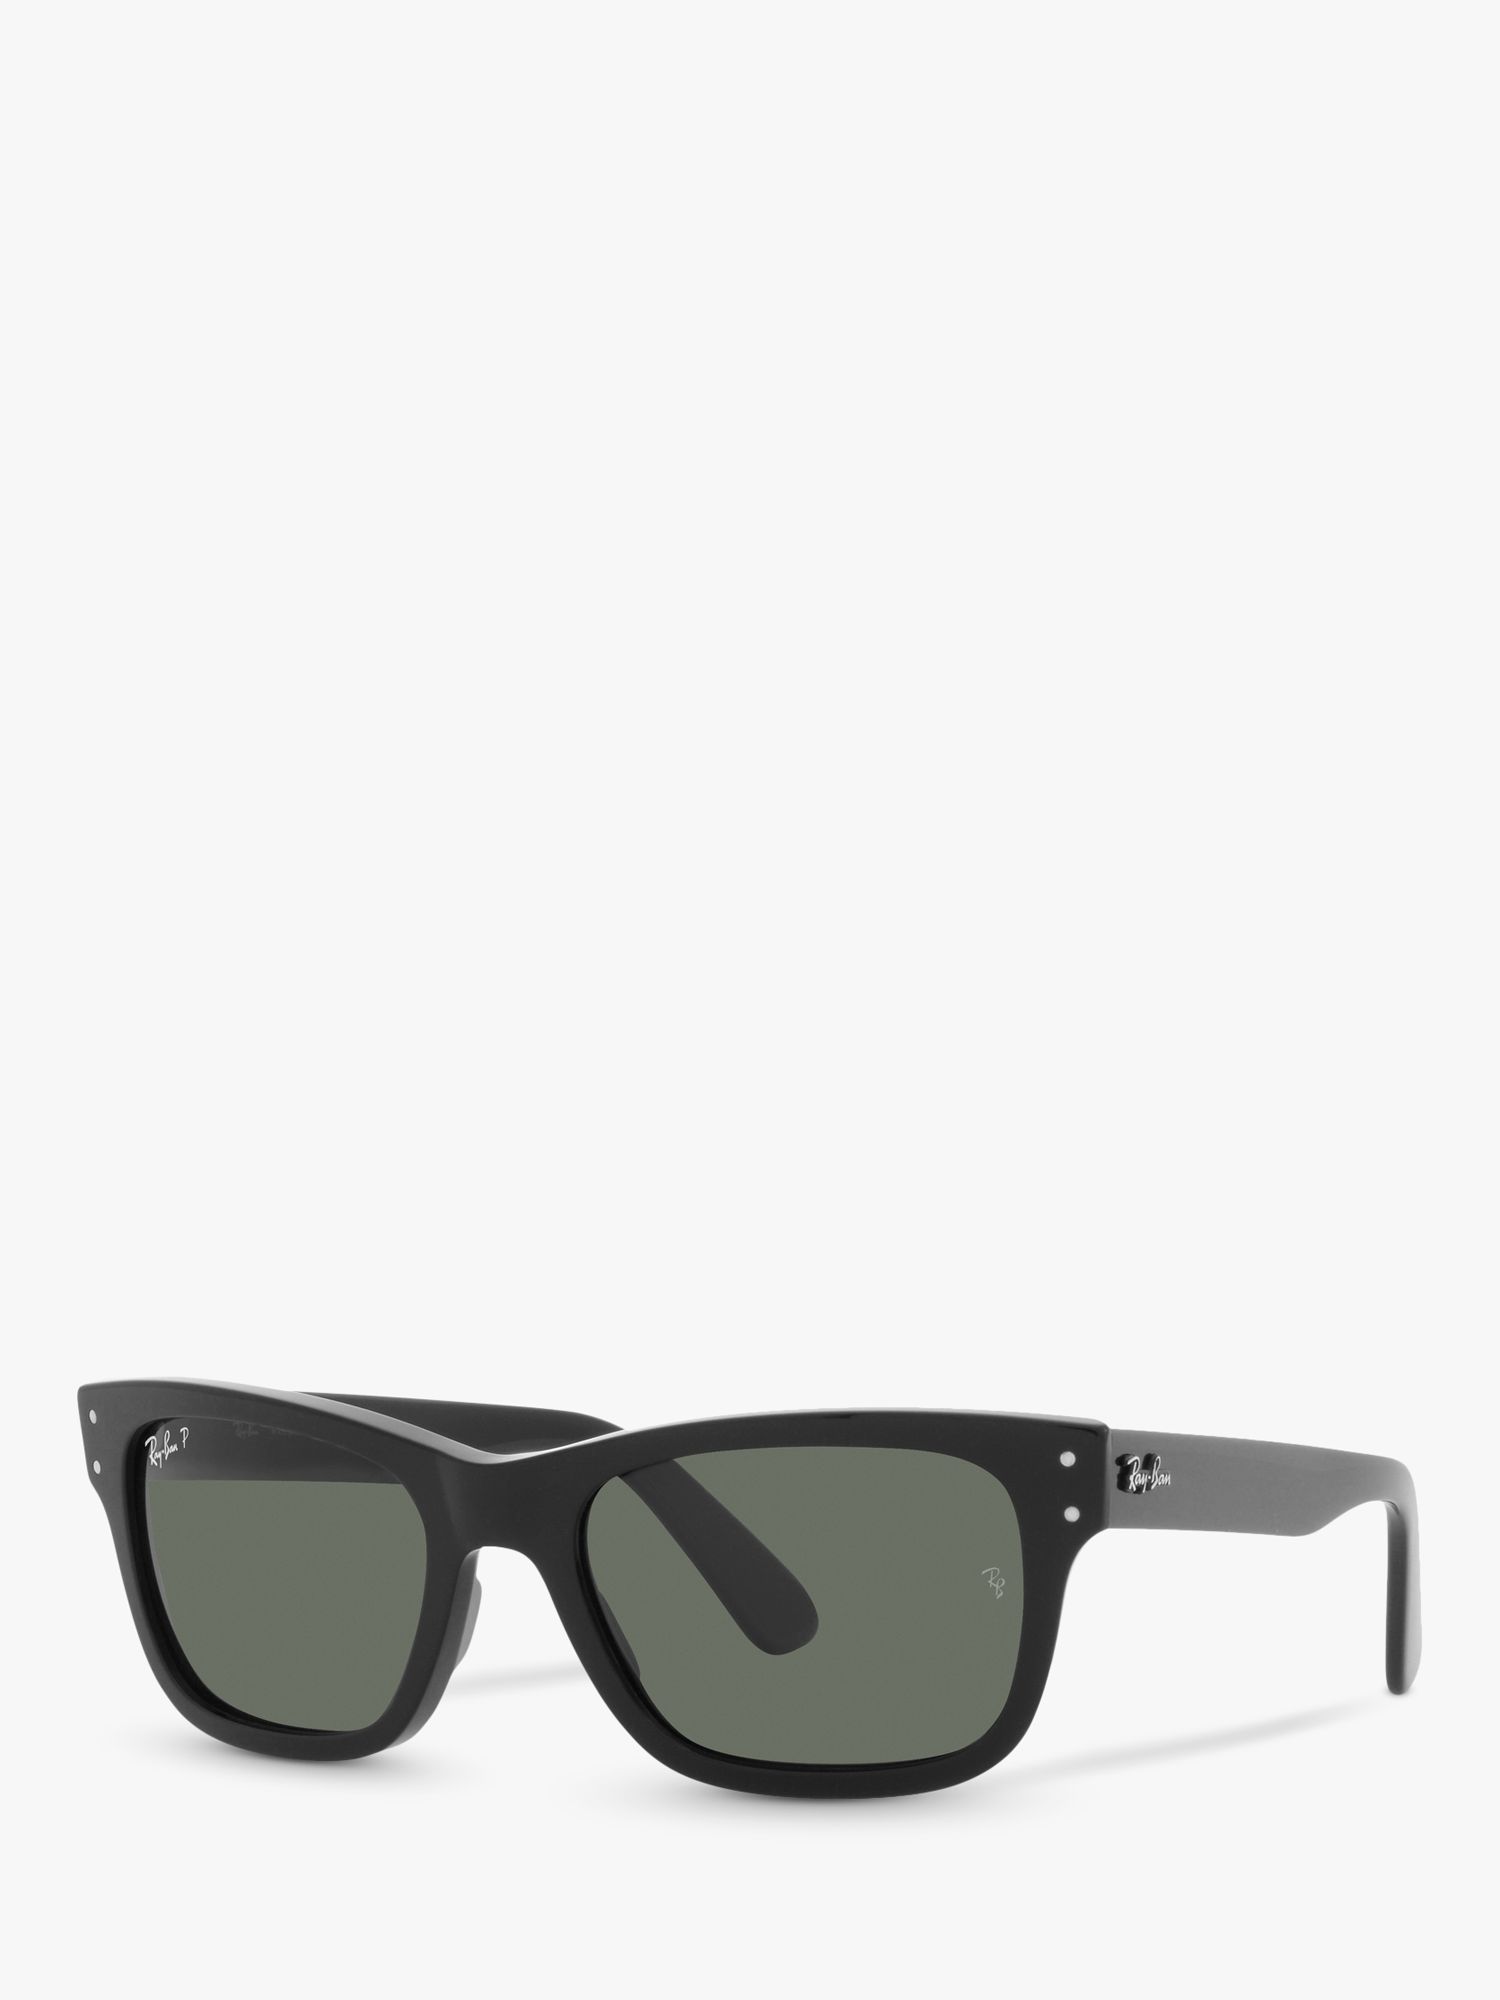 Мужские поляризованные солнцезащитные очки Ray-Ban RB2283901, черные/зеленые